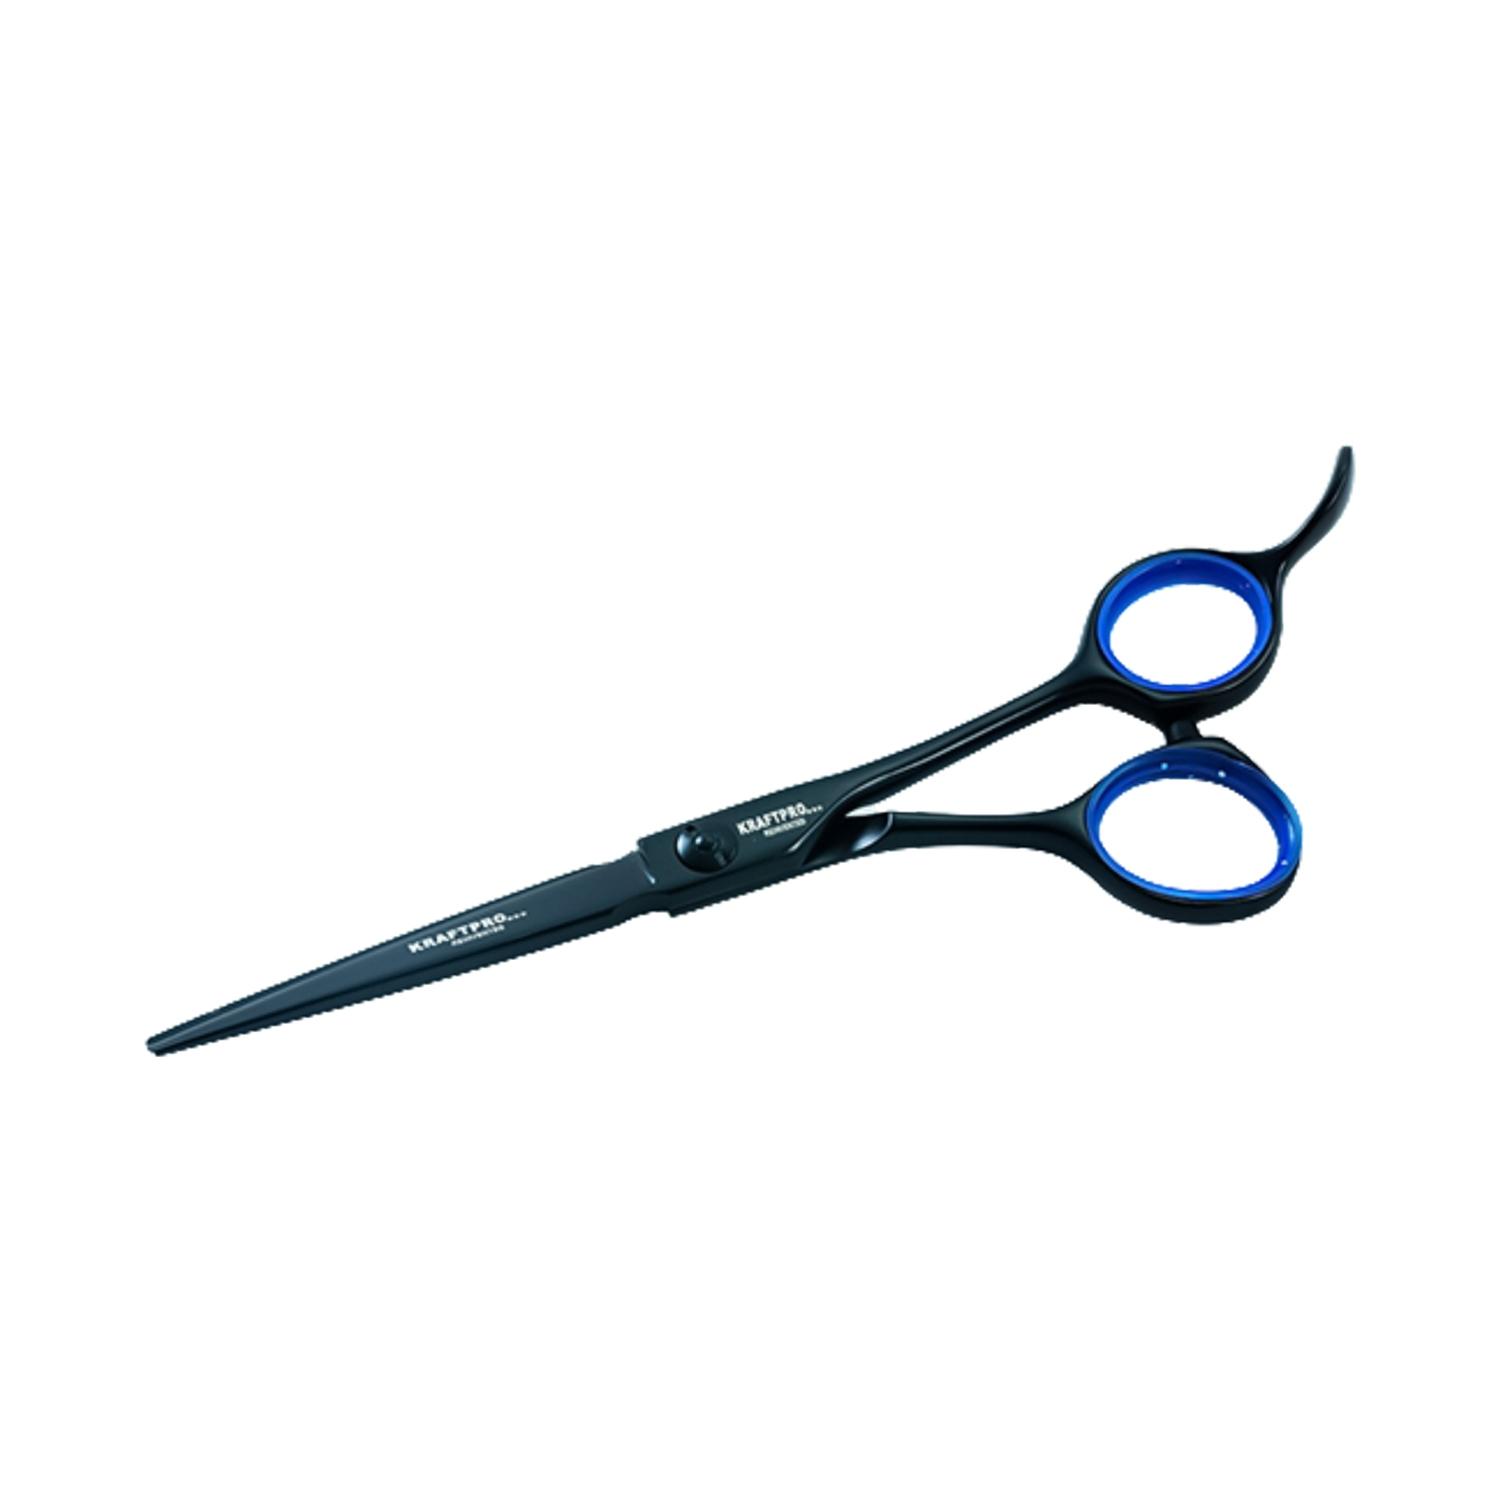 kraftpro hair cutting scissor swb-65